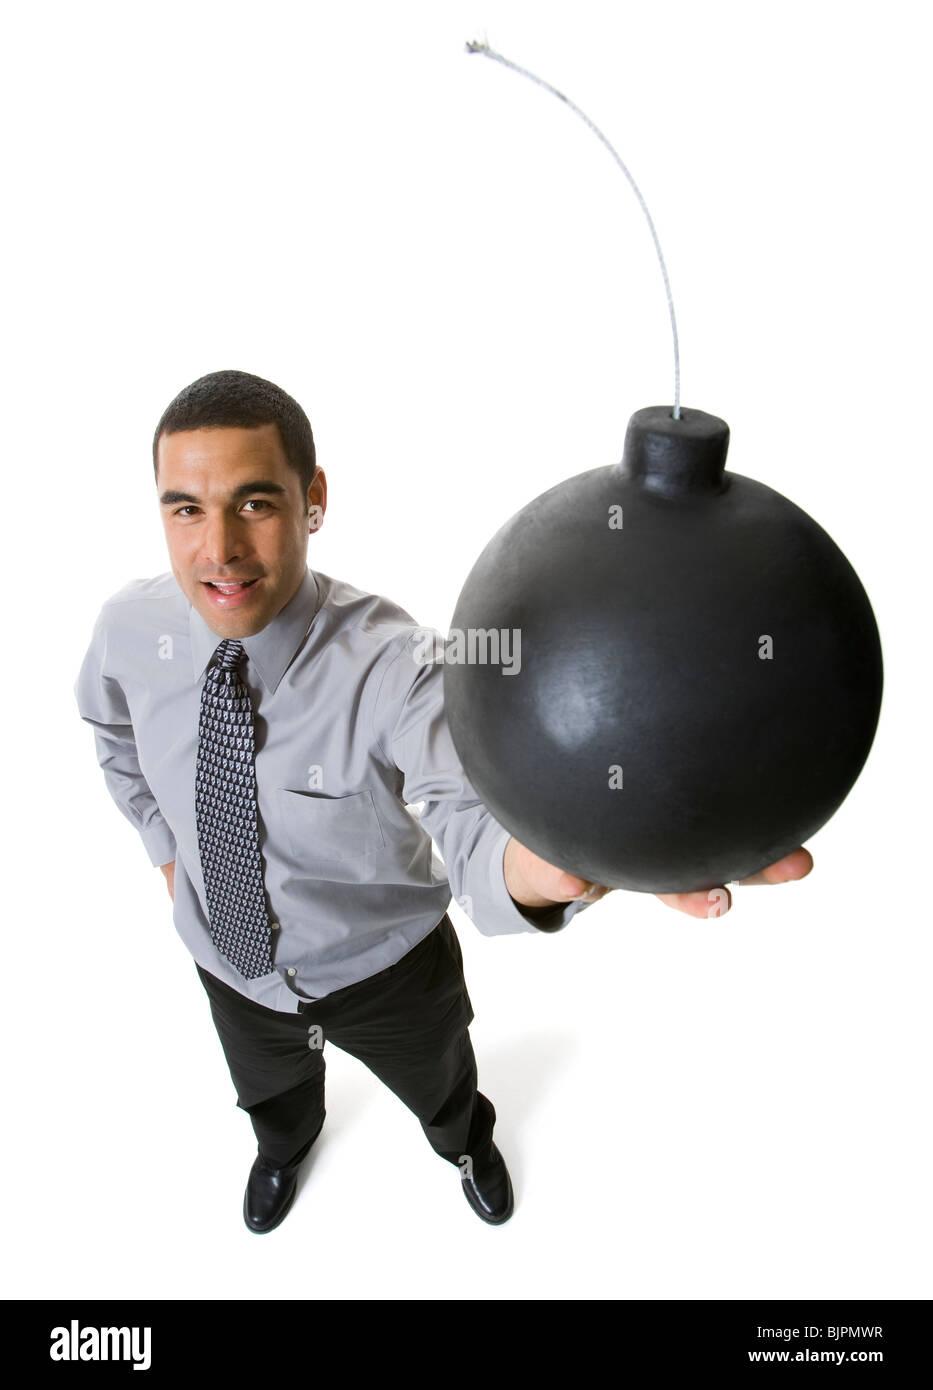 Homme tenant un cannonball Banque D'Images